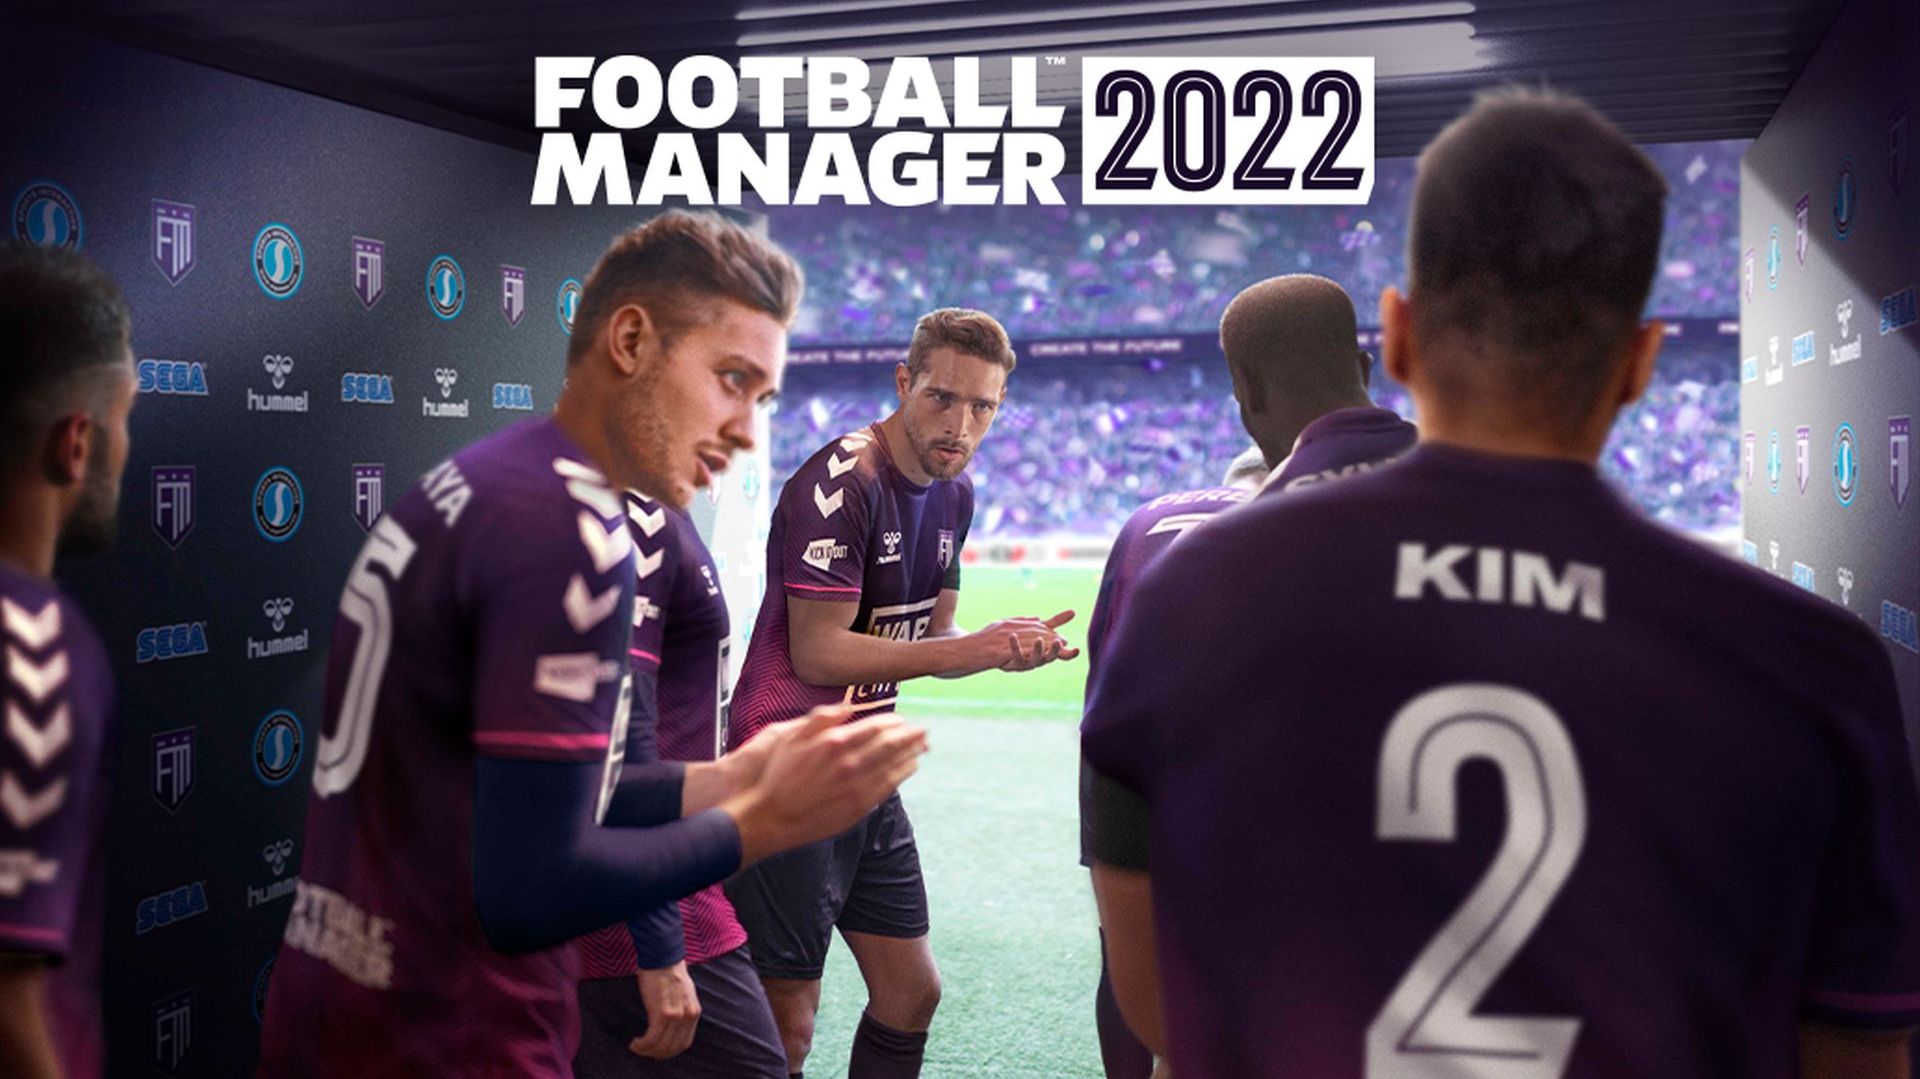 فروش بیش از یک میلیون نسخه از بازی Football Manager 2022 